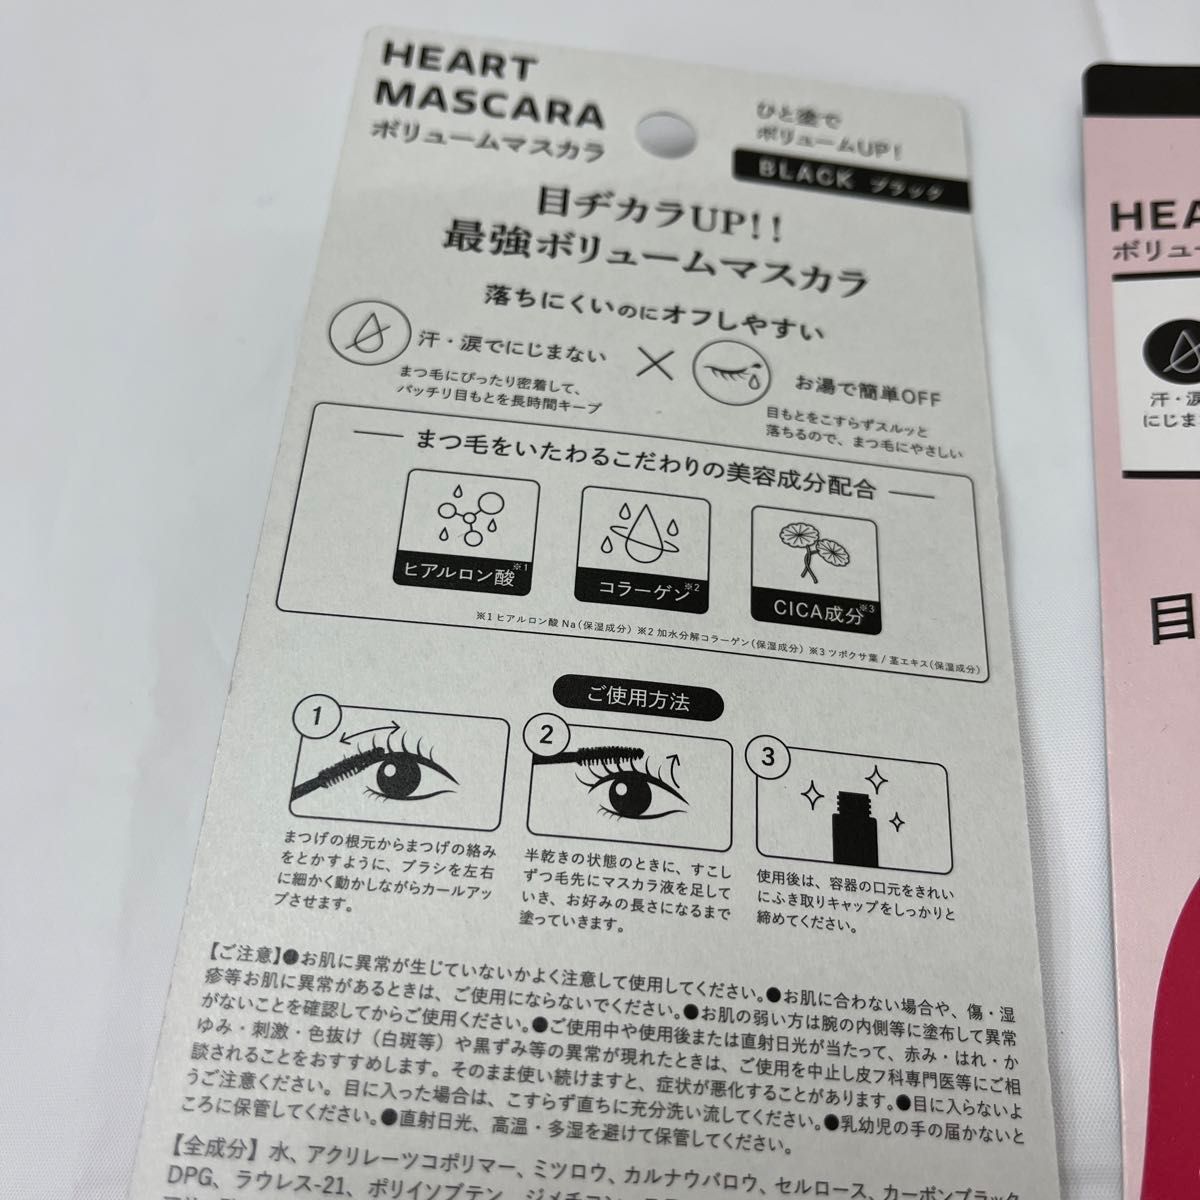 マスカラ Heart ボリュームマスカラ 定価2000円 バラ売りまとめ売り 本数指定可能 美容成分配合 2本セットページ